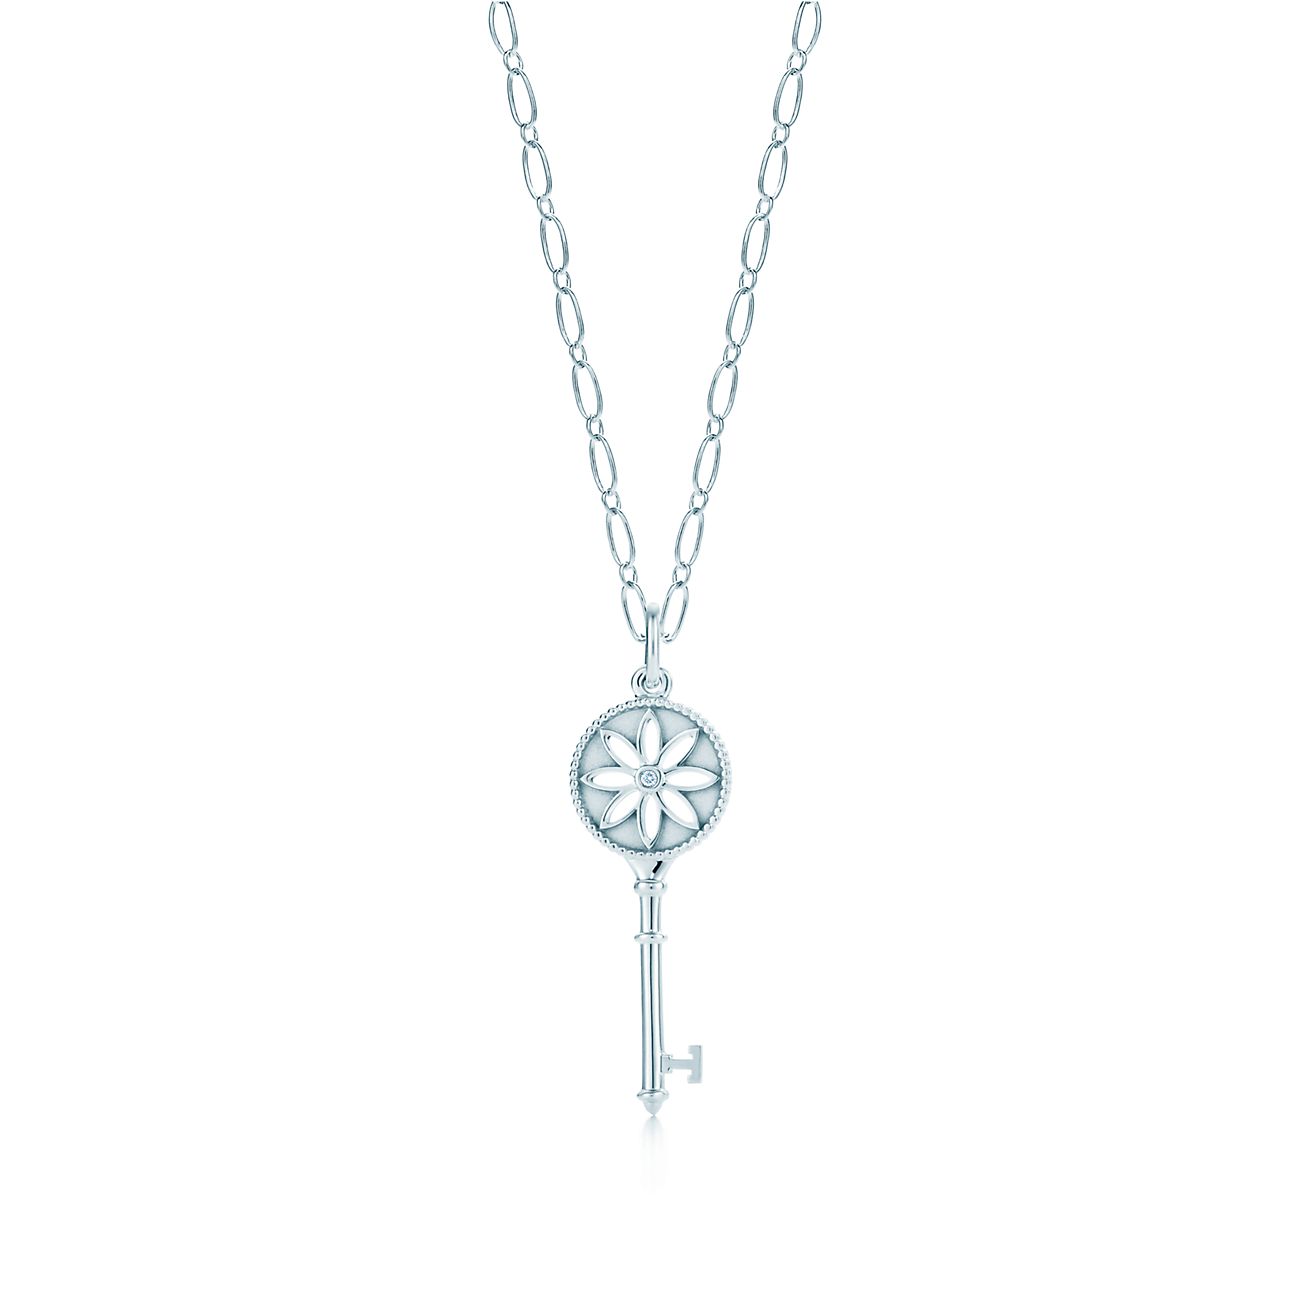 Tiffany Keys daisy key pendant in 